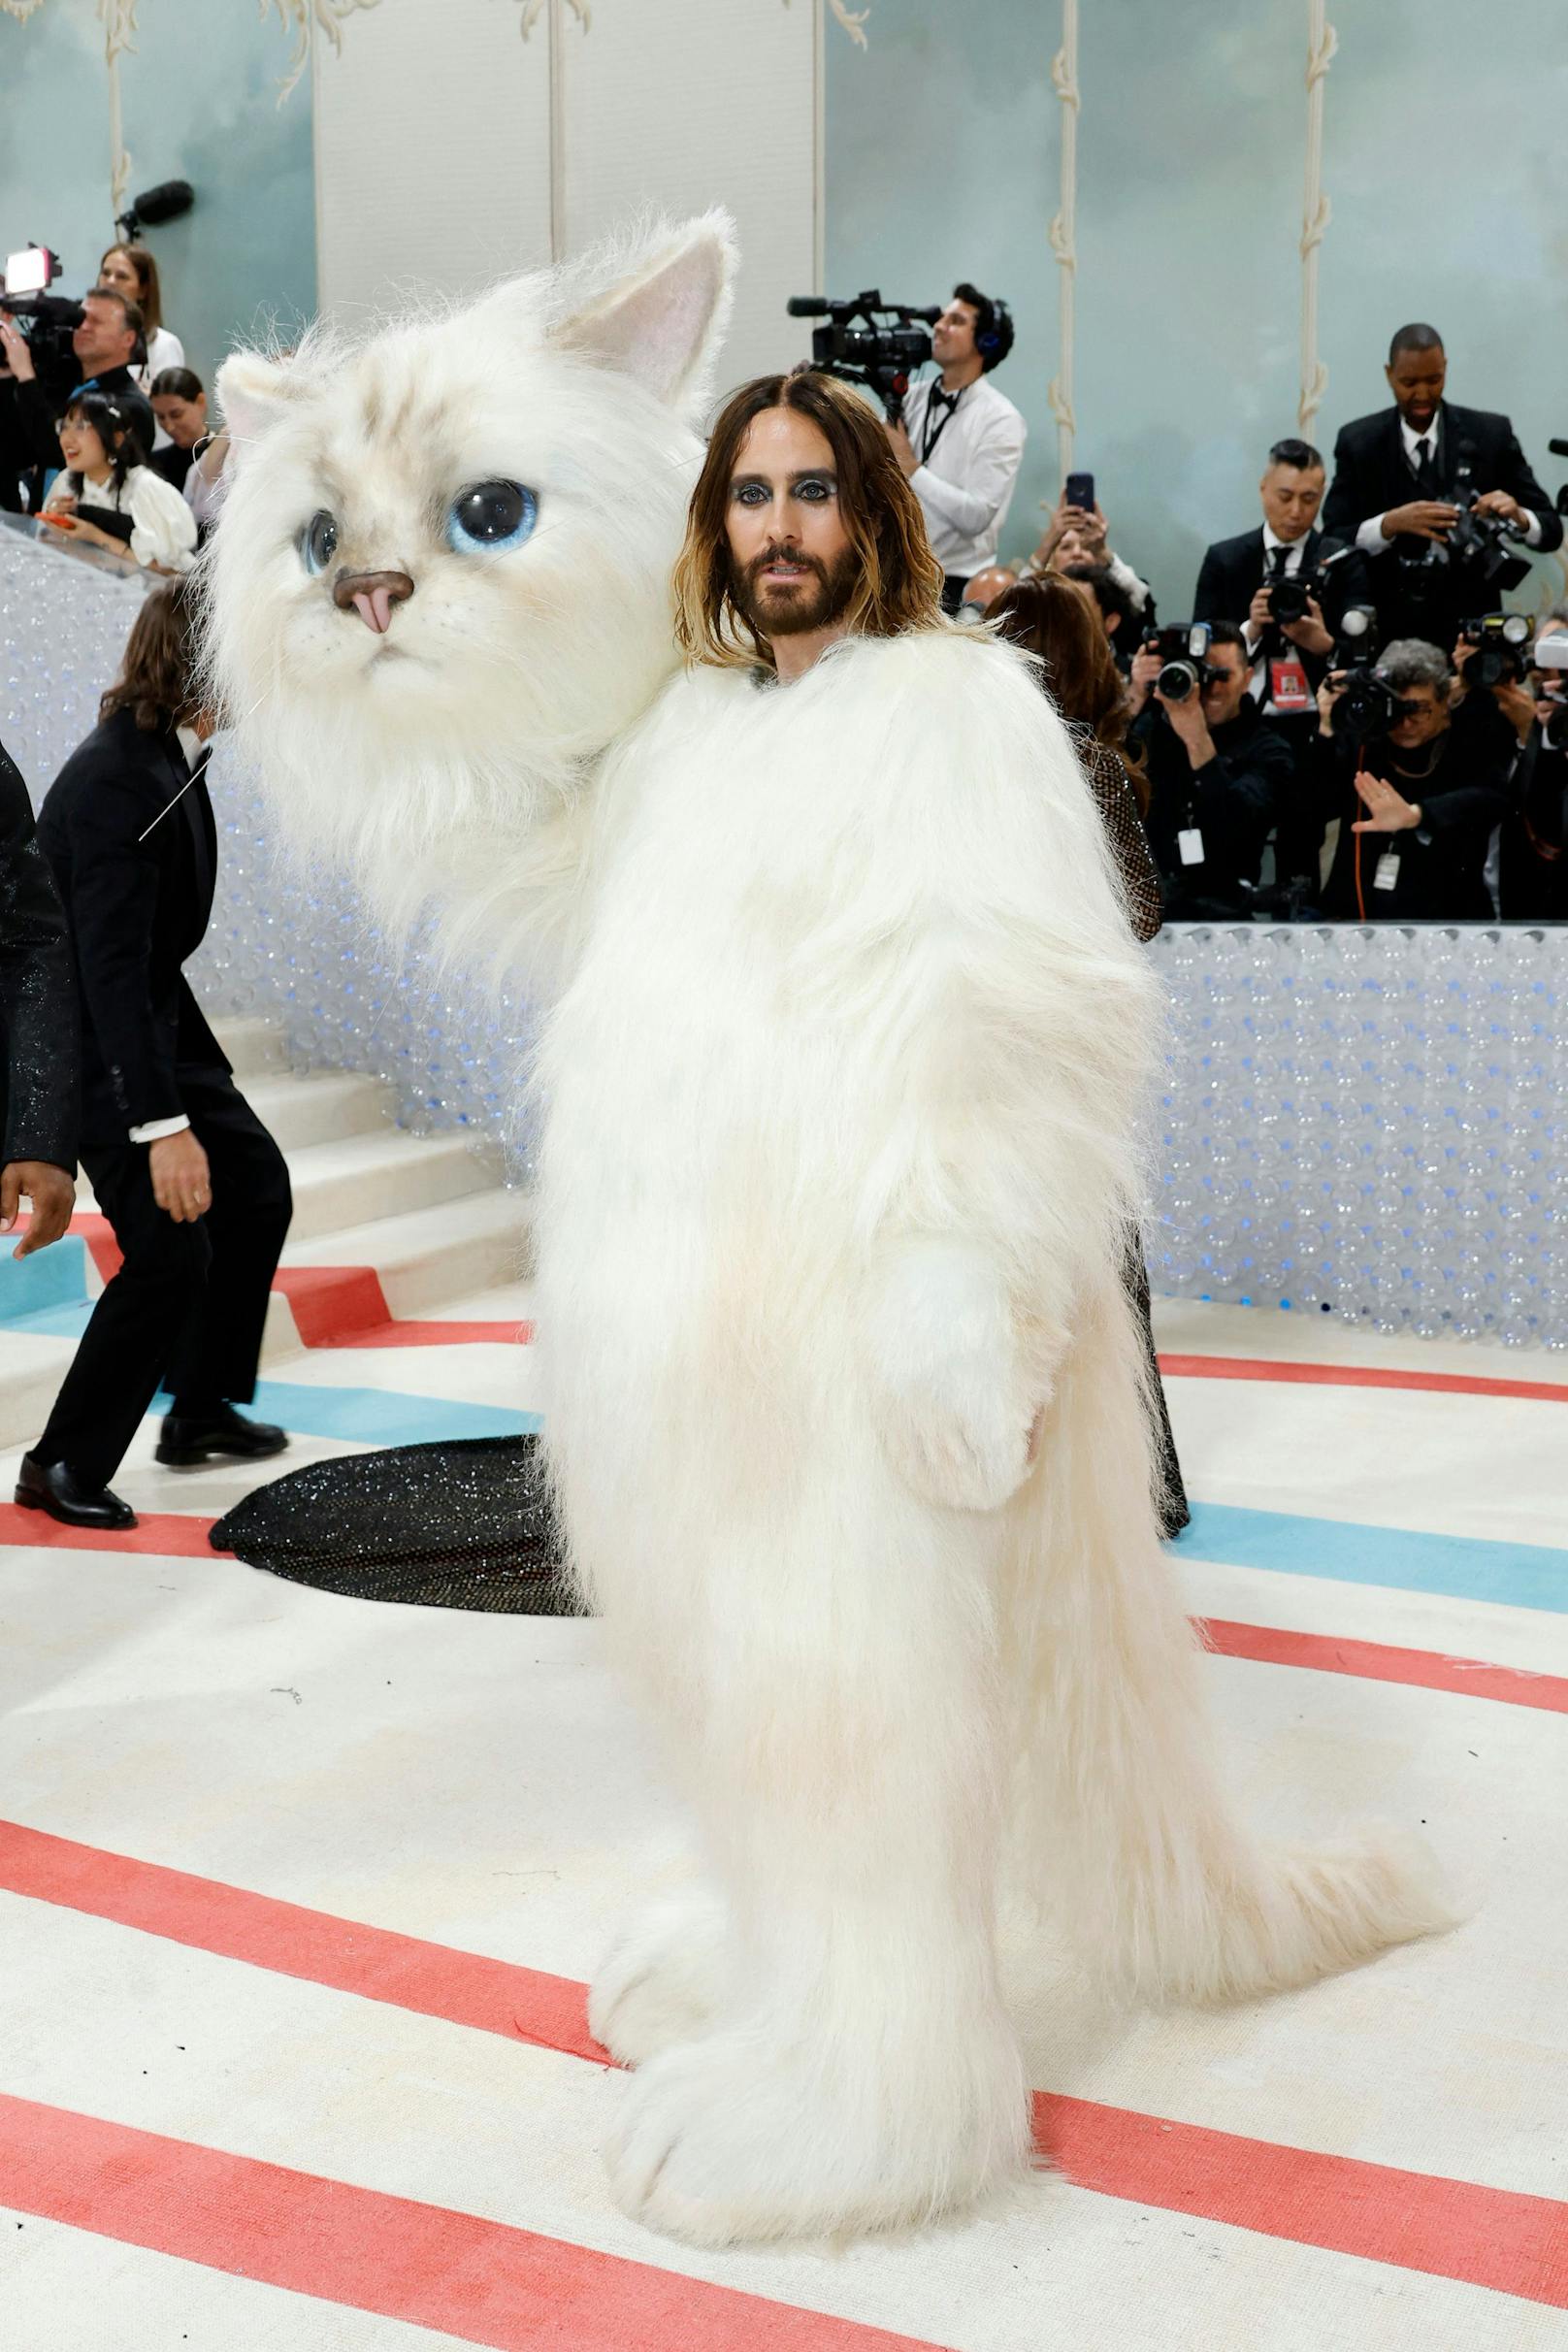 Niemand geringerer als Hollywood-Star Jared Leto war in das Katzenkostüm geschlüpft.